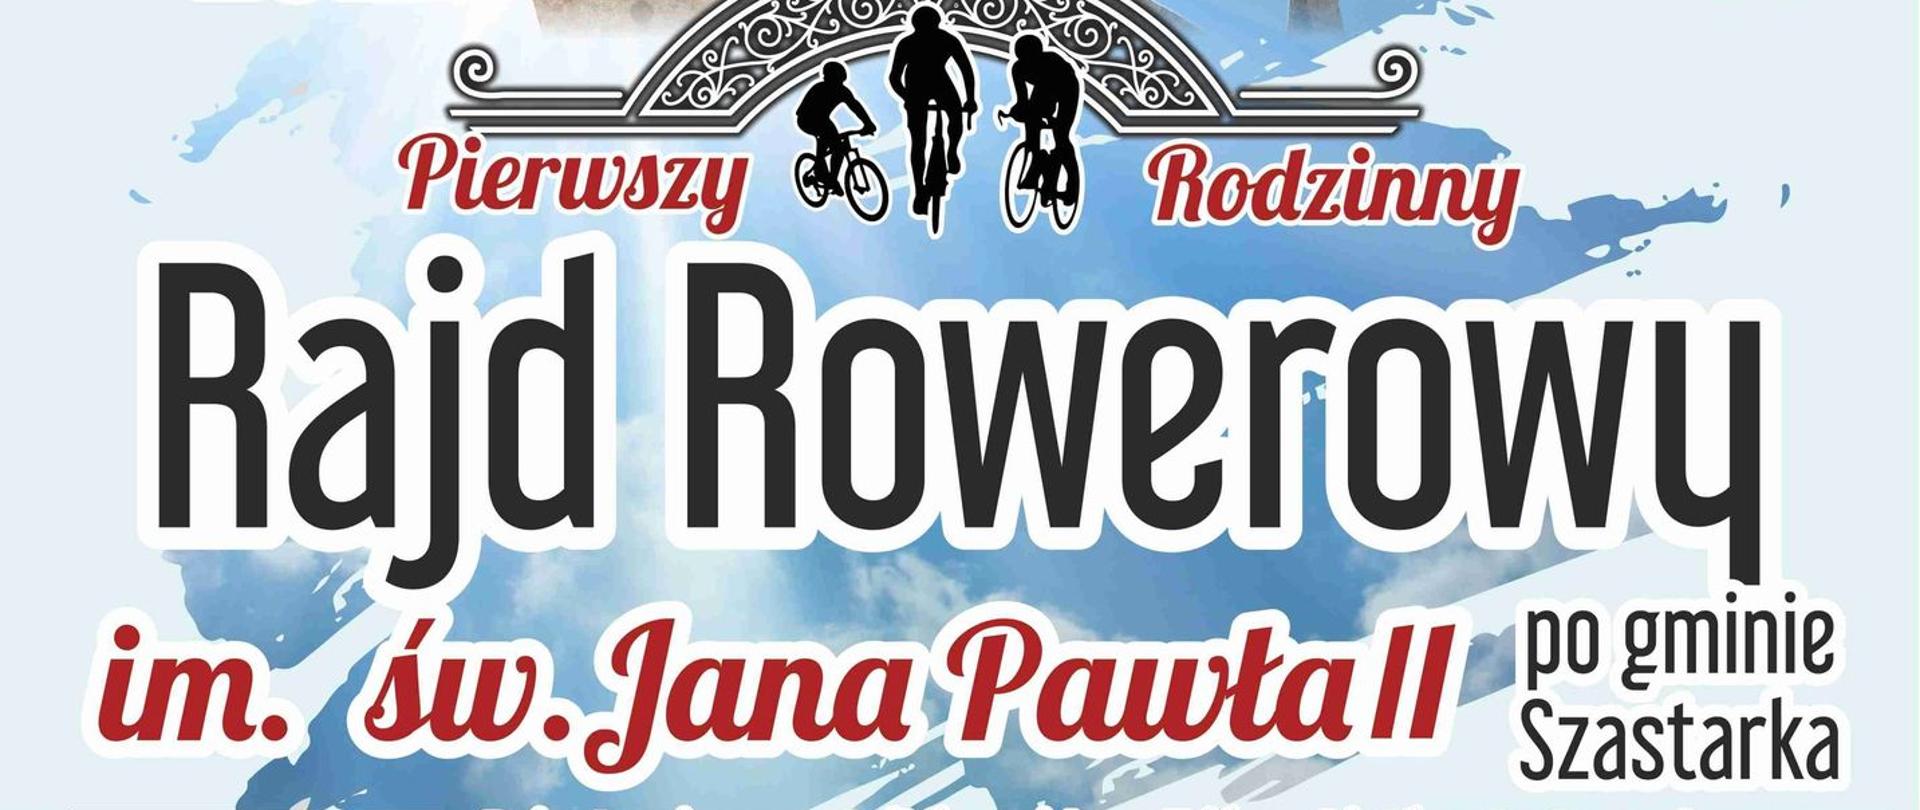 Pierwszy Rodzinny Rajd Rowerowy im. św. Jana Pawła II w Gminie Szastarka - plakat